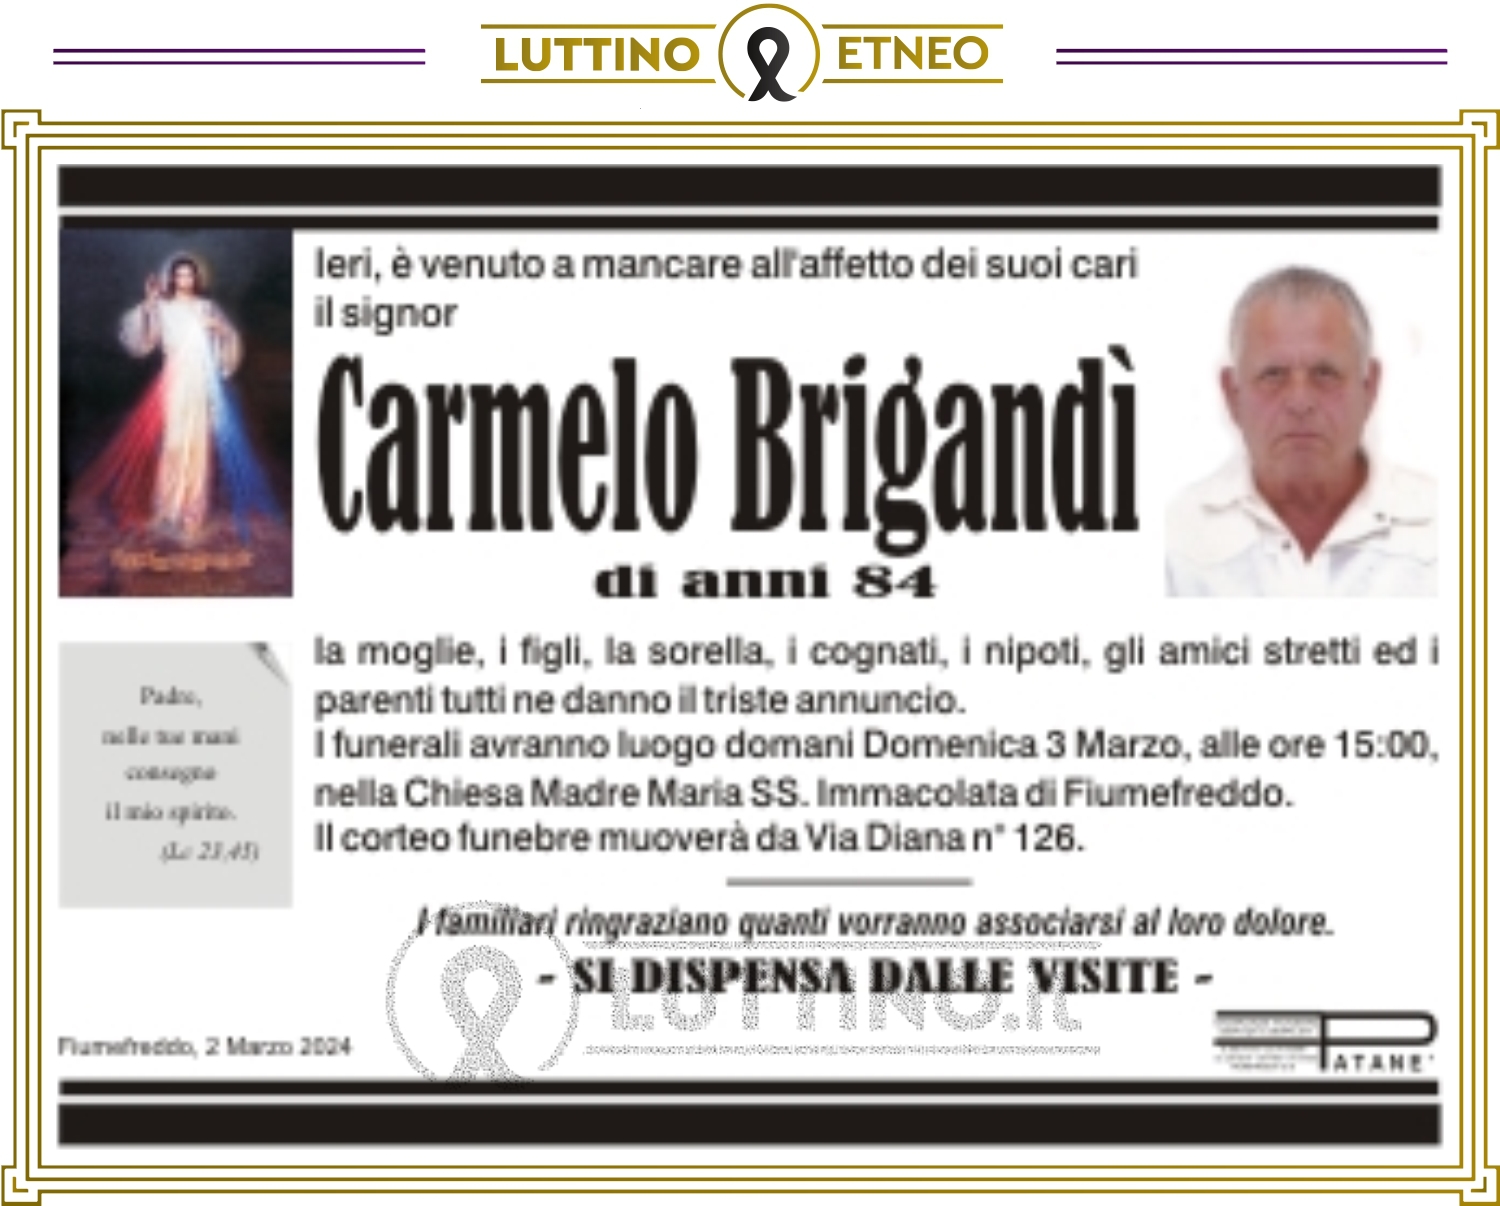 Carmelo Brigandi'